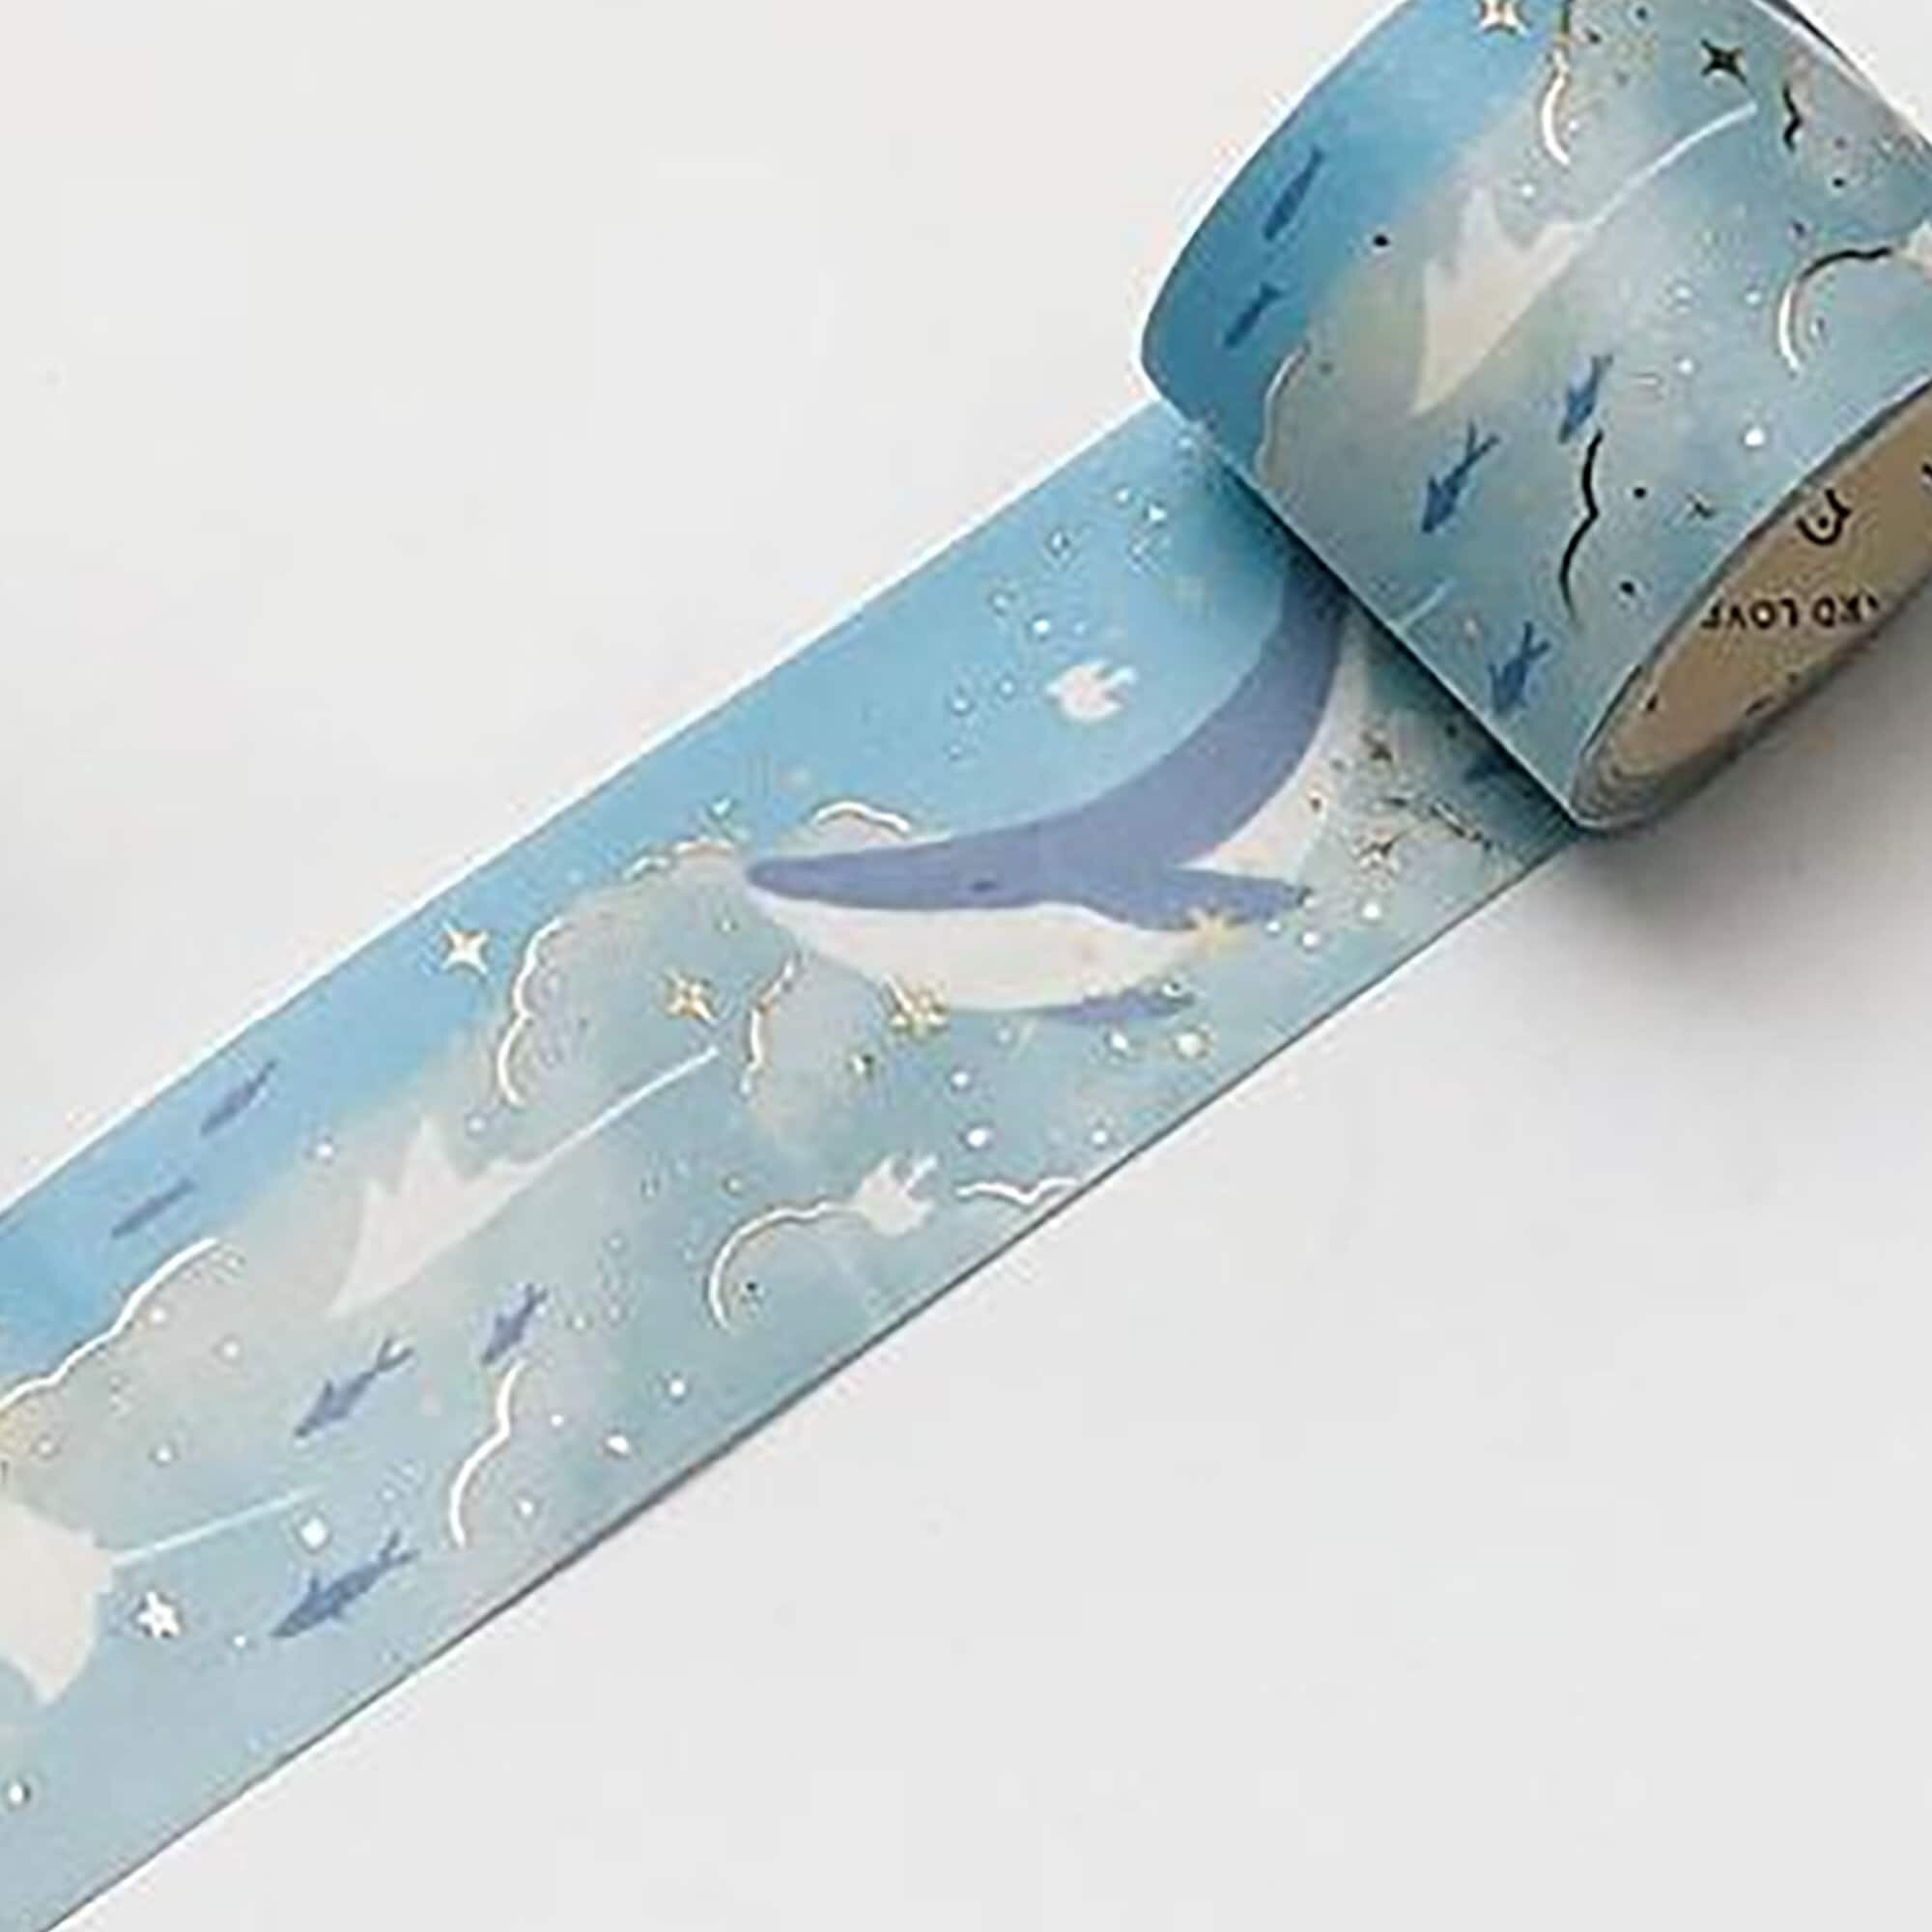 Dream Whale Washi Tape, Cute Purple Washi Tape, Kawaii Stationery